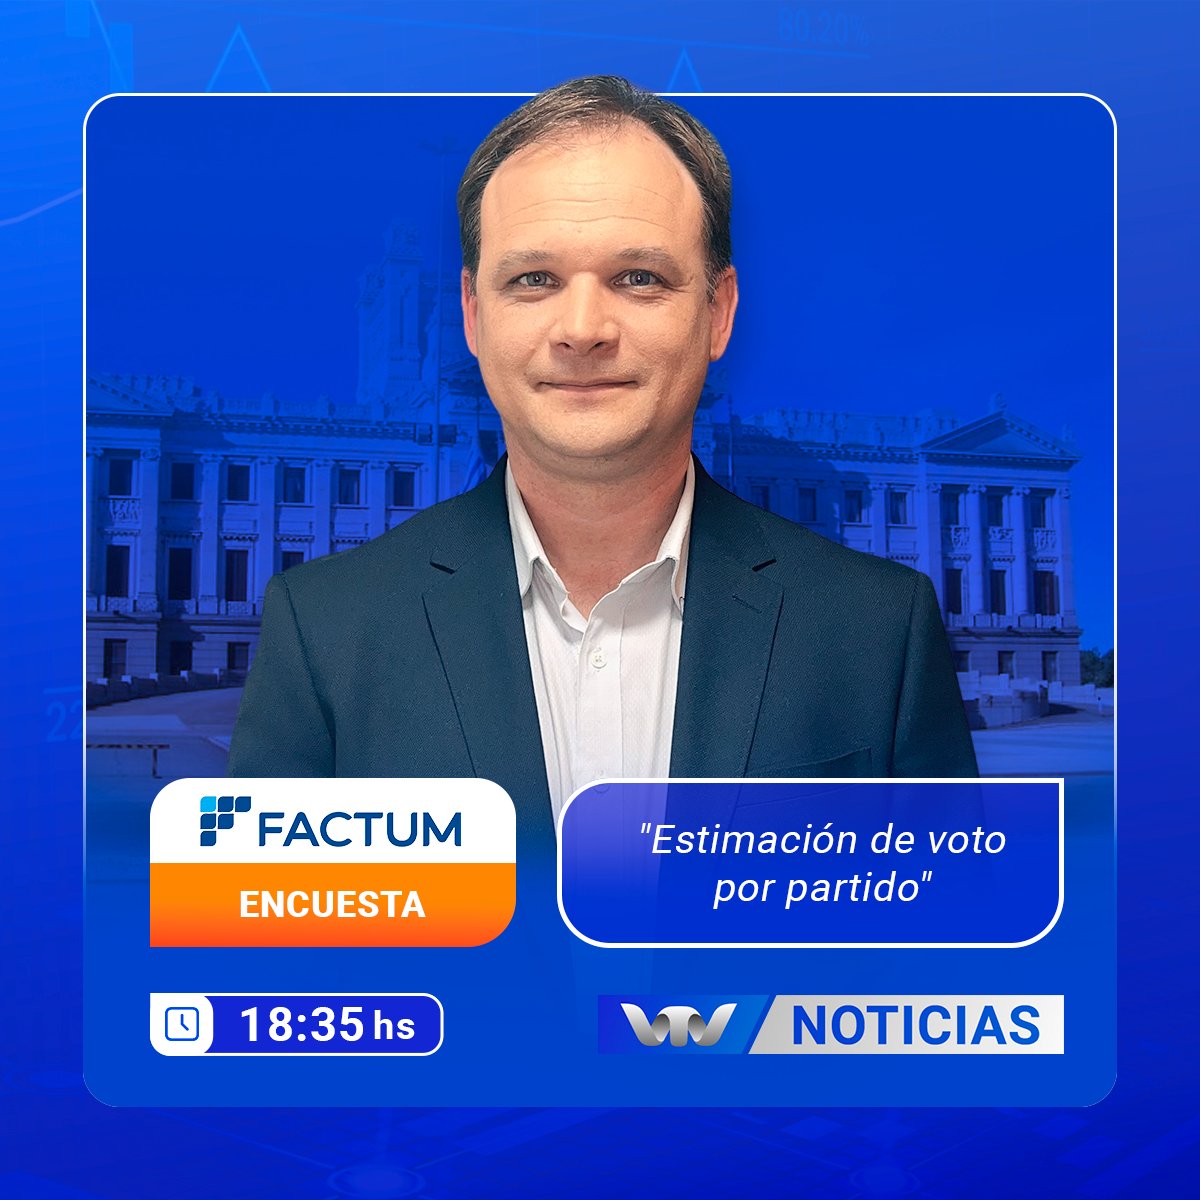 ➡️ Hoy en #VTVNoticias encuesta @FactumUy  con el director, @ebottinelli_.